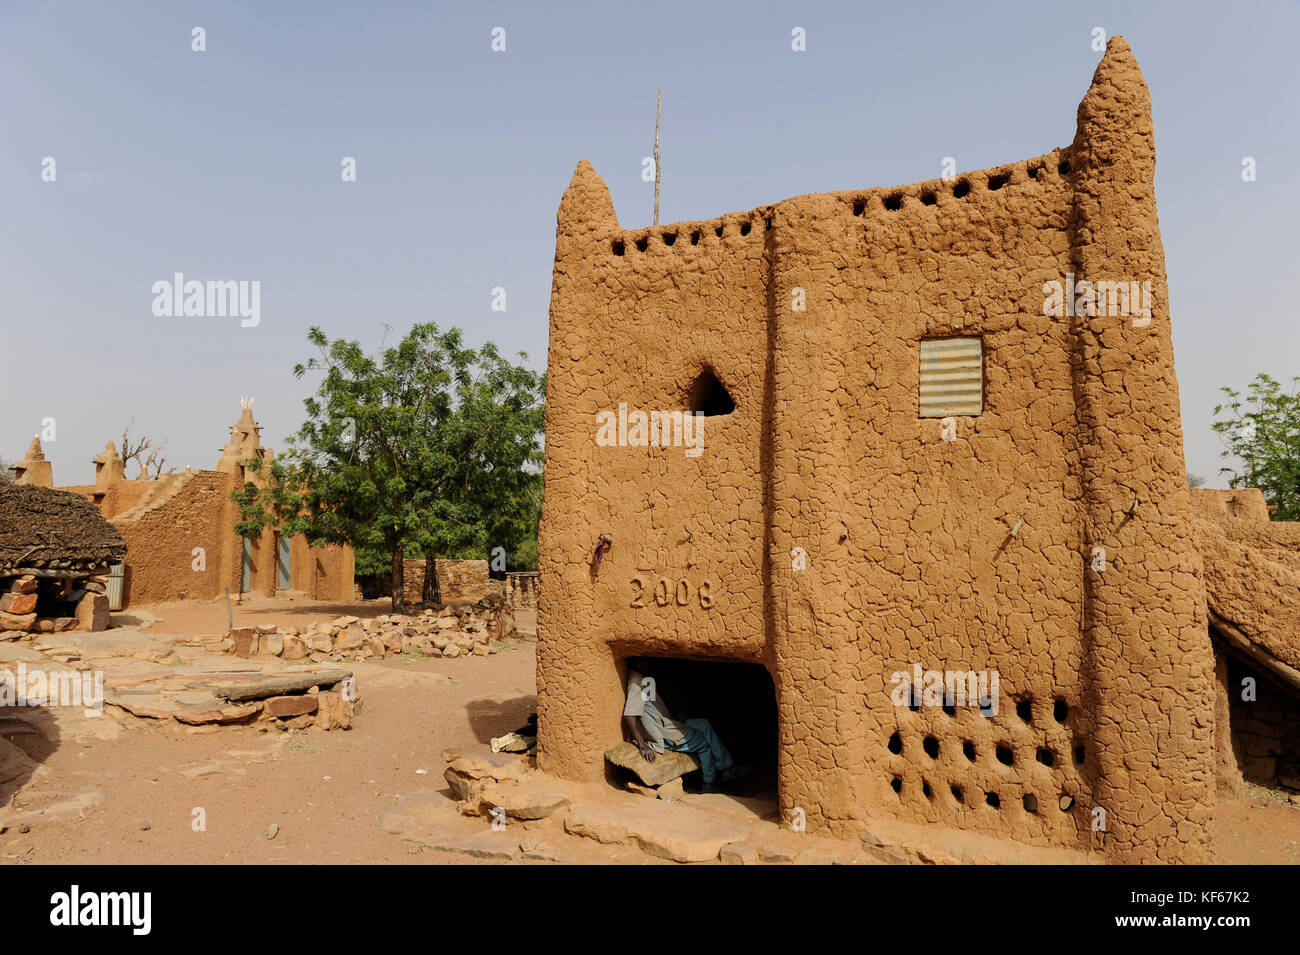 Land der Dogon in Mali, Dogon village Songho mit Ton Architektur an der Falaise die UNESCO Welterbe/MALI, etwa 20 km von Bandiagara südoestlich verlaeuft die rund 200 km lange Falaise, UNESCO-Welterbe, eine teilweise stark erodierte Sandsteinwand bis zu 300m Höhe, hier befinden sich viele Dogon Doerfer im Lehmbau Architektur, Dorf Songho Stockfoto